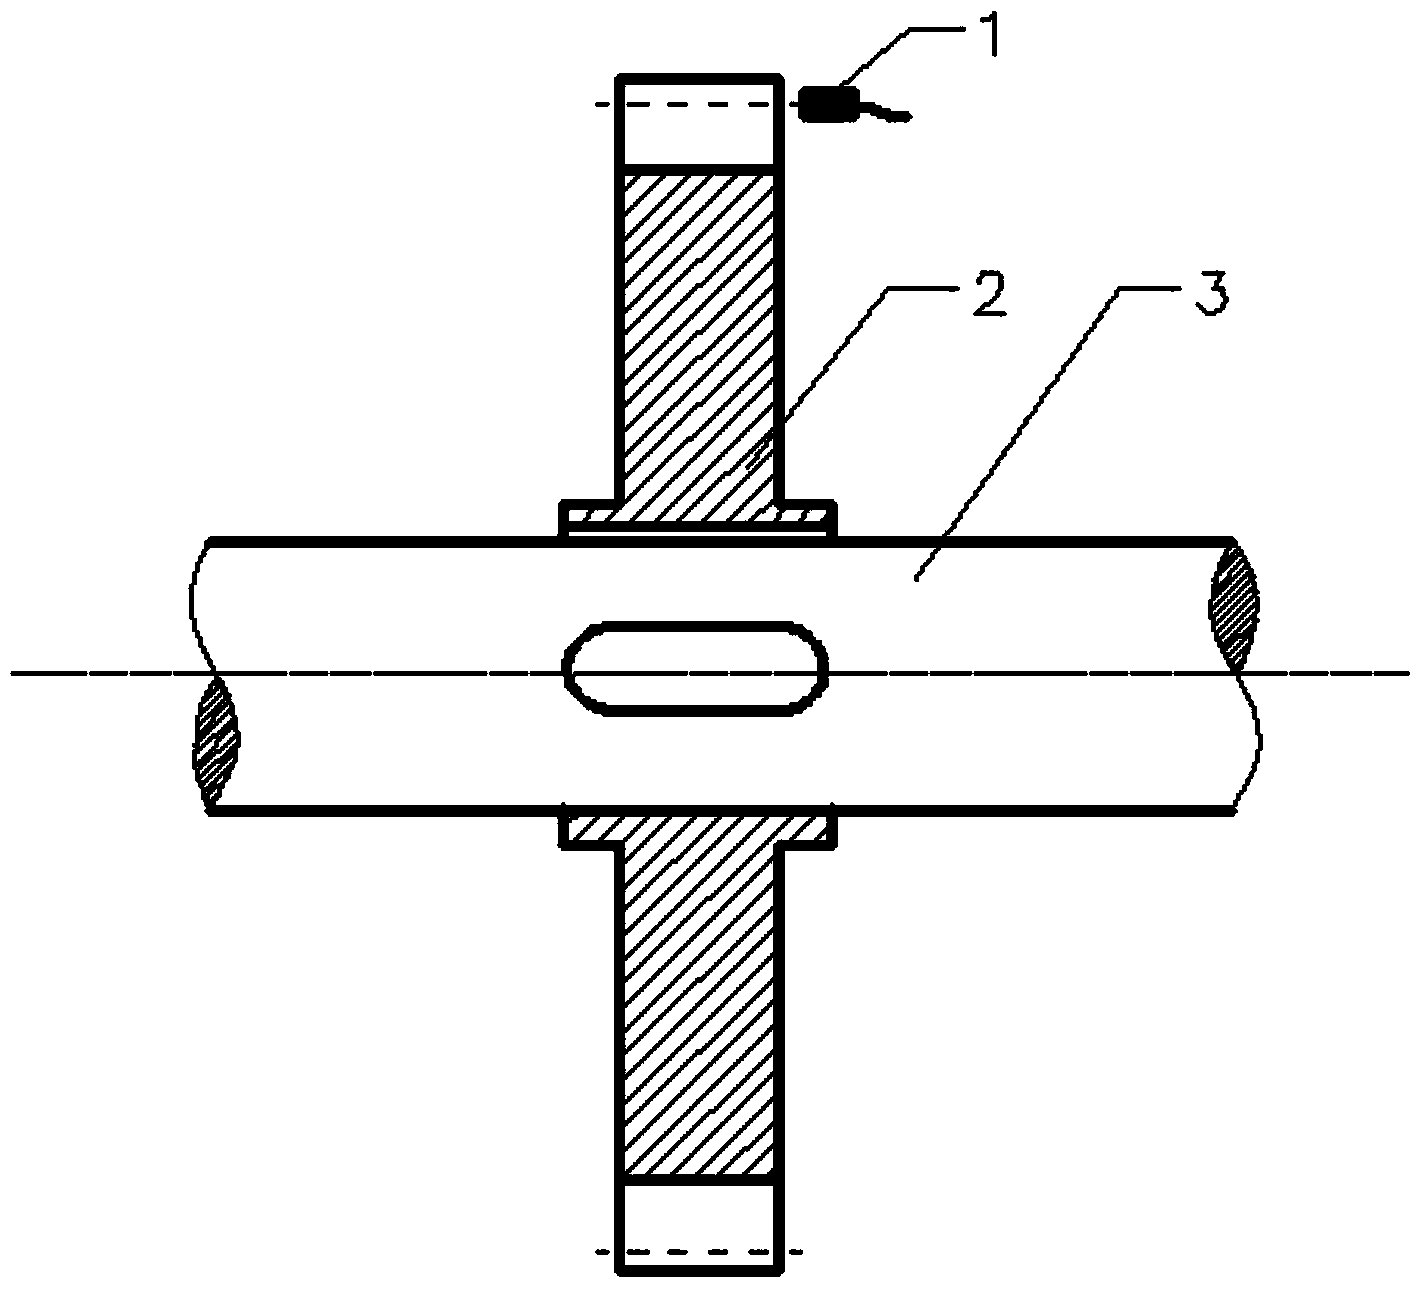 Method for measuring torsional vibration of shafting